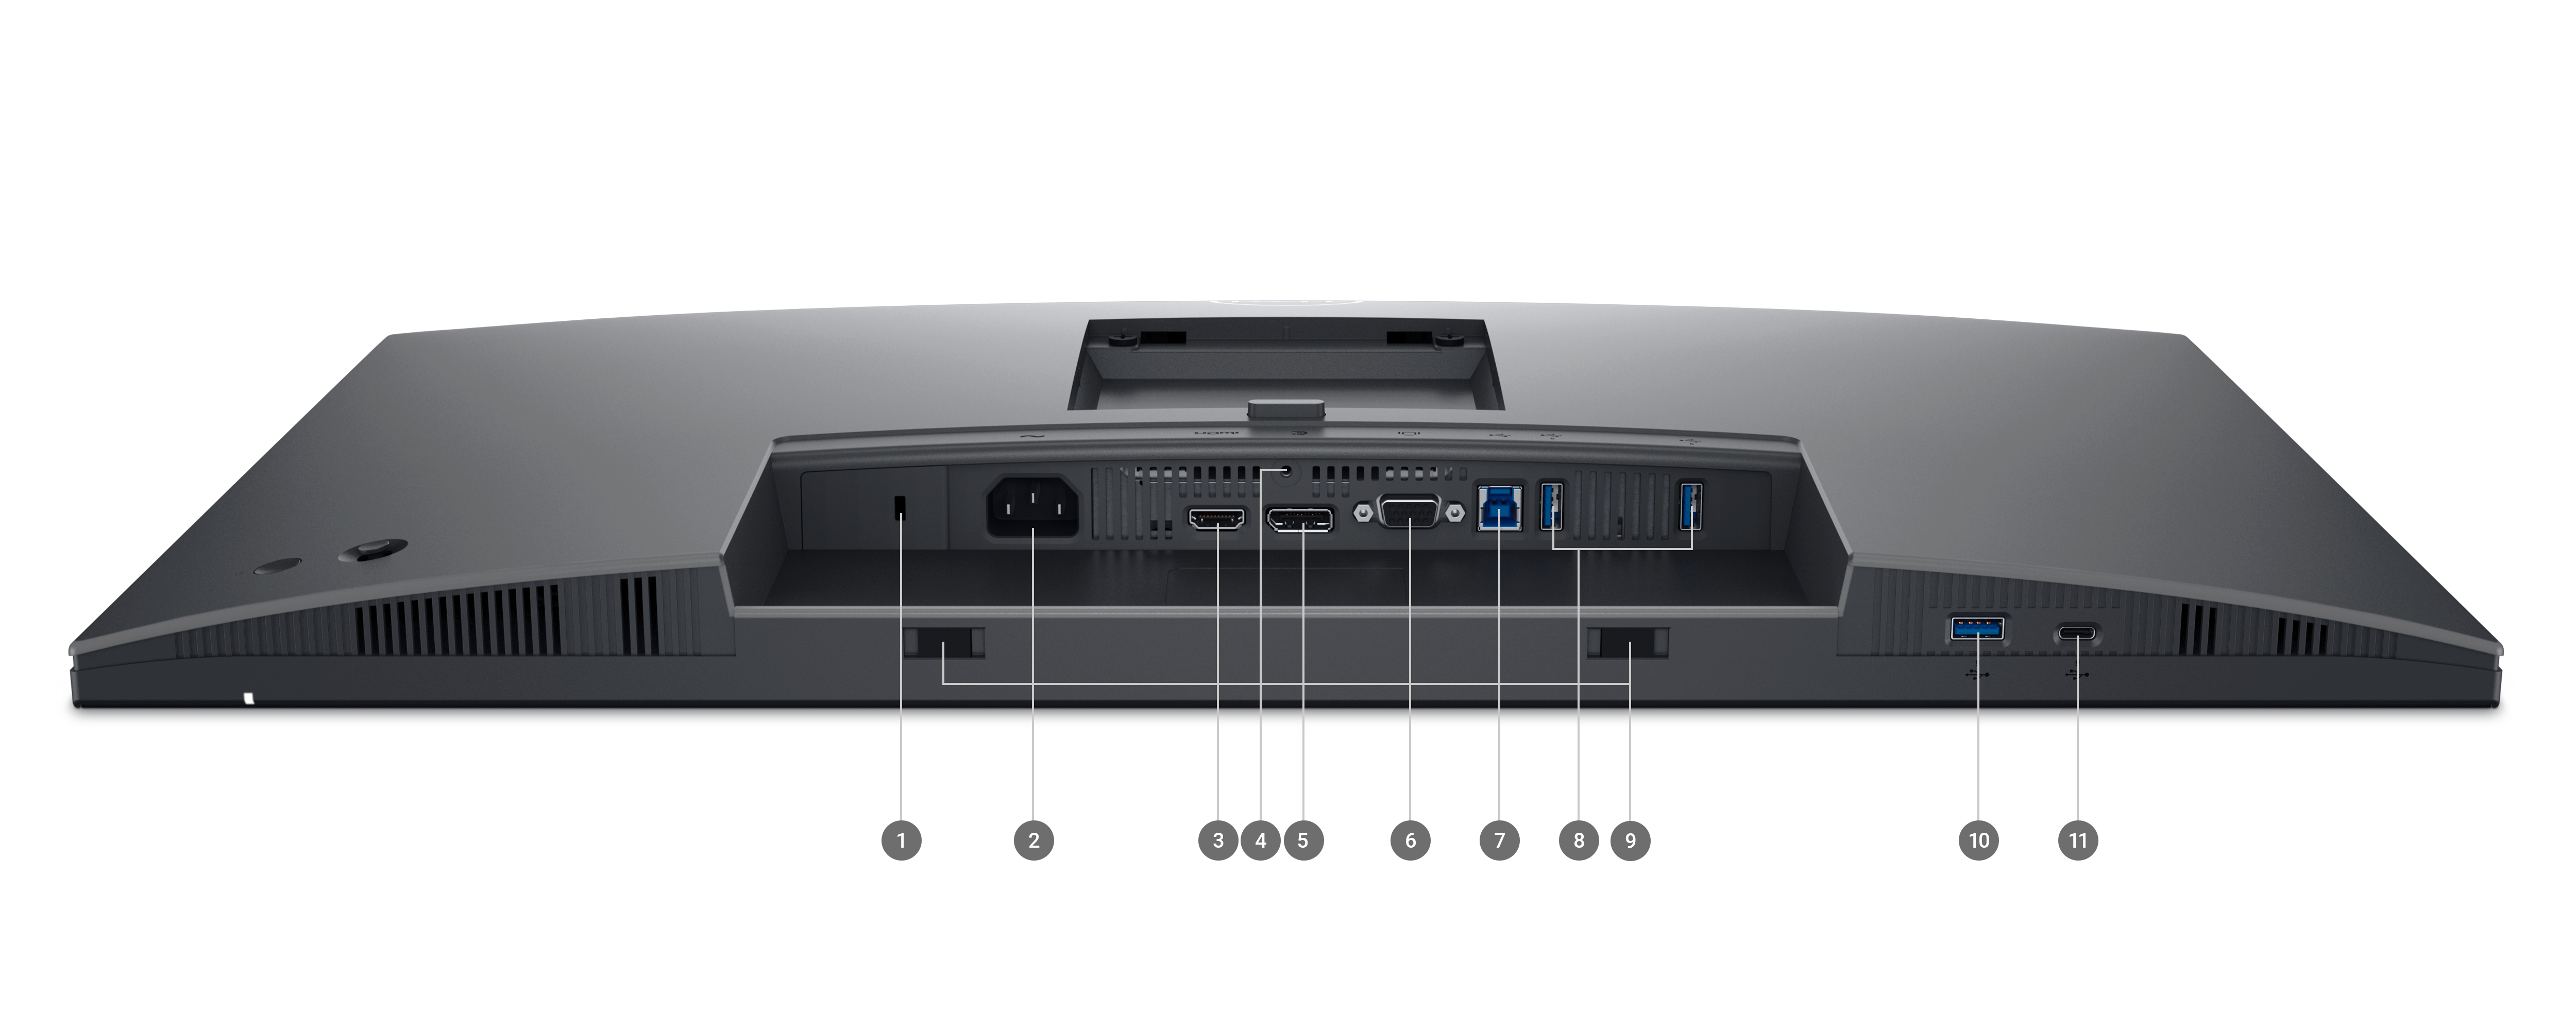 Écran Dell série P 2725H avec l’écran abaissé et des numéros compris entre 1 et 11 indiquant les ports disponibles sous le produit.